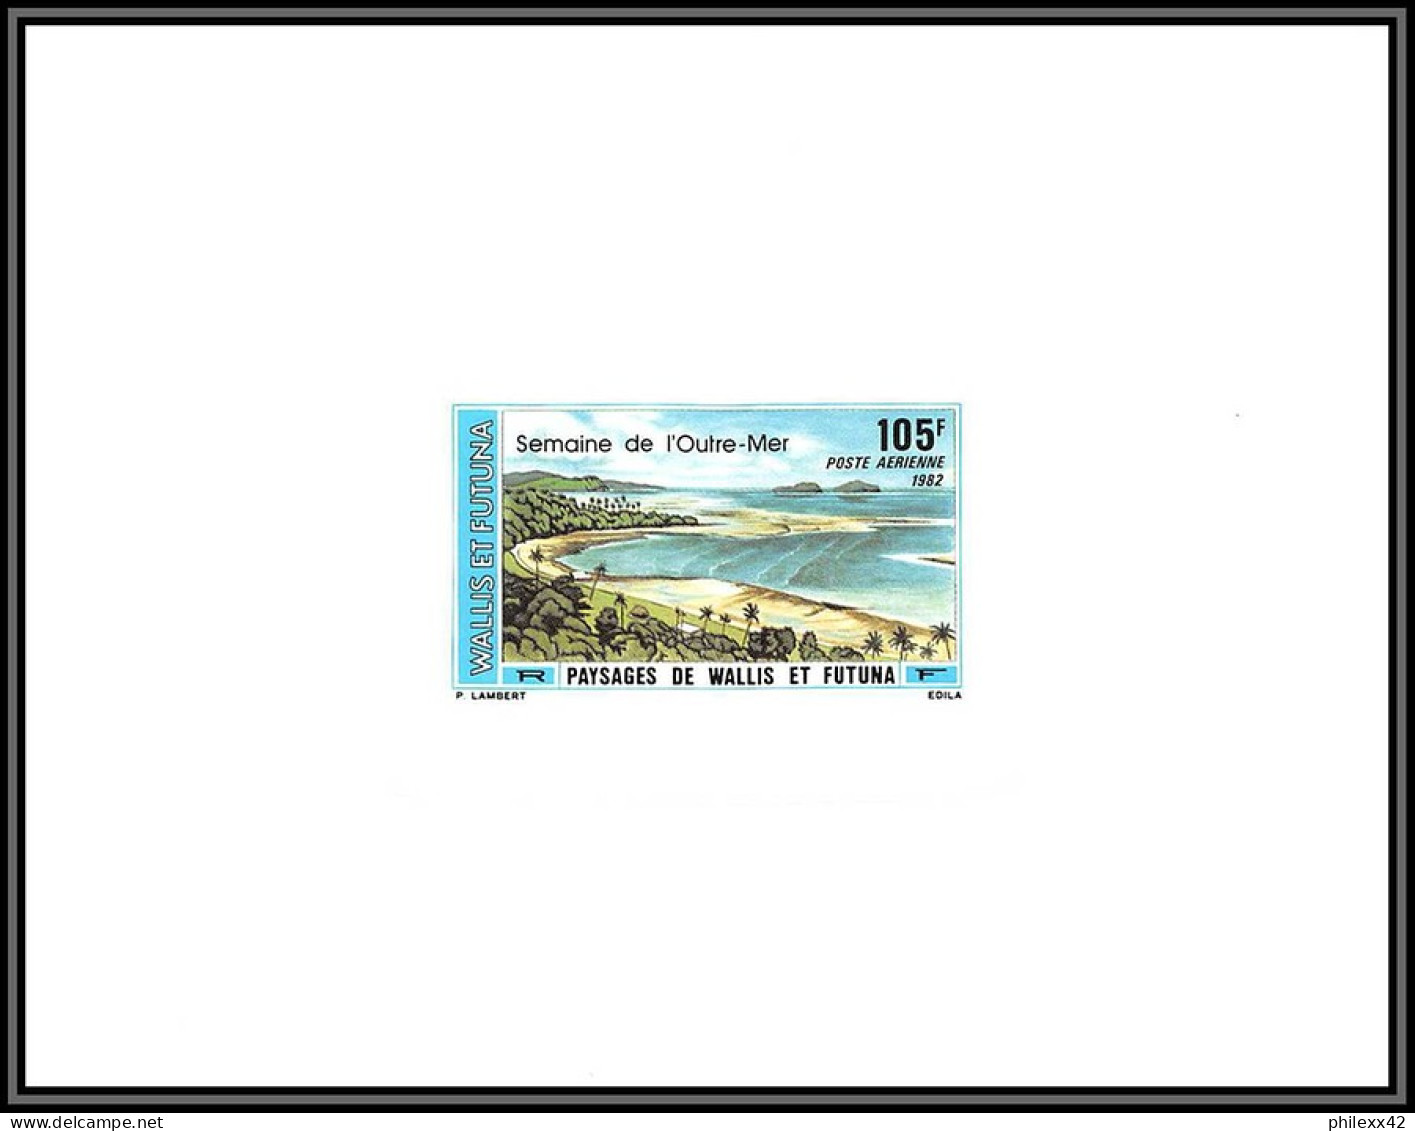 91750c Wallis Et Futuna PA N° 118 Semaine De L OUTRE-MER Paysages Non Dentelé Imperforate ** MNH Epreuve De Luxe Proof - Imperforates, Proofs & Errors